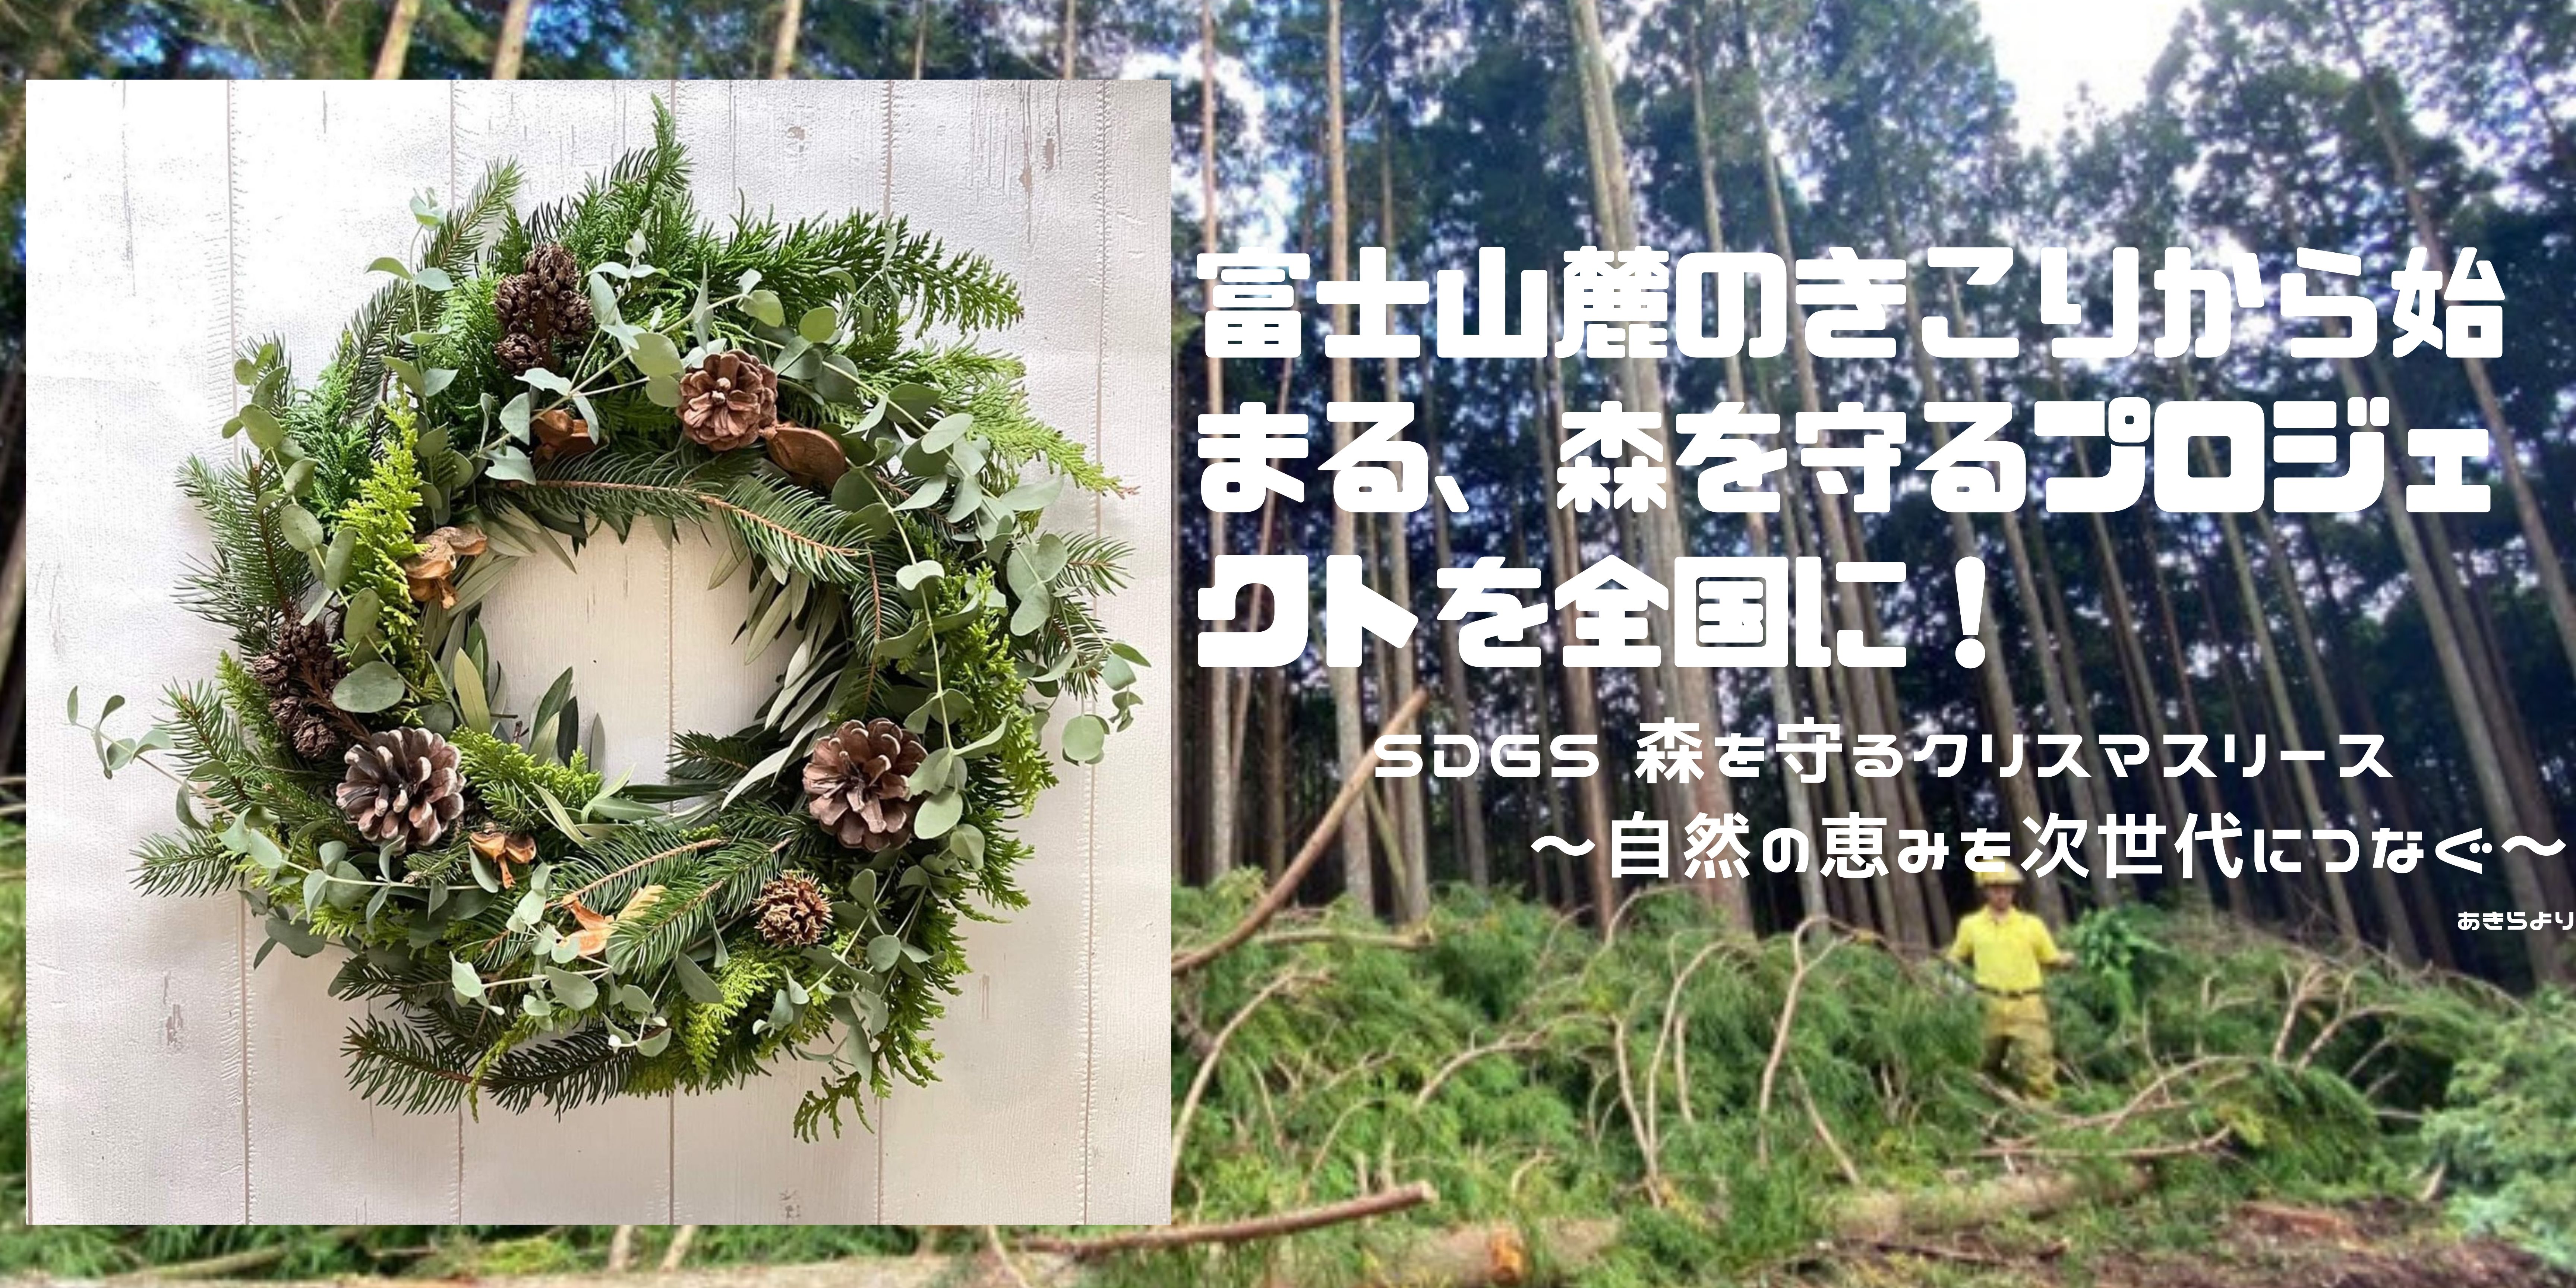 富士山麓の木こりから始まる 森を守るプロジェクトを全国に 森の大切さを次世代に伝える クリスマスリース プロジェクトをクラウドファンディングにて開始いたします 株式会社jouroのプレスリリース